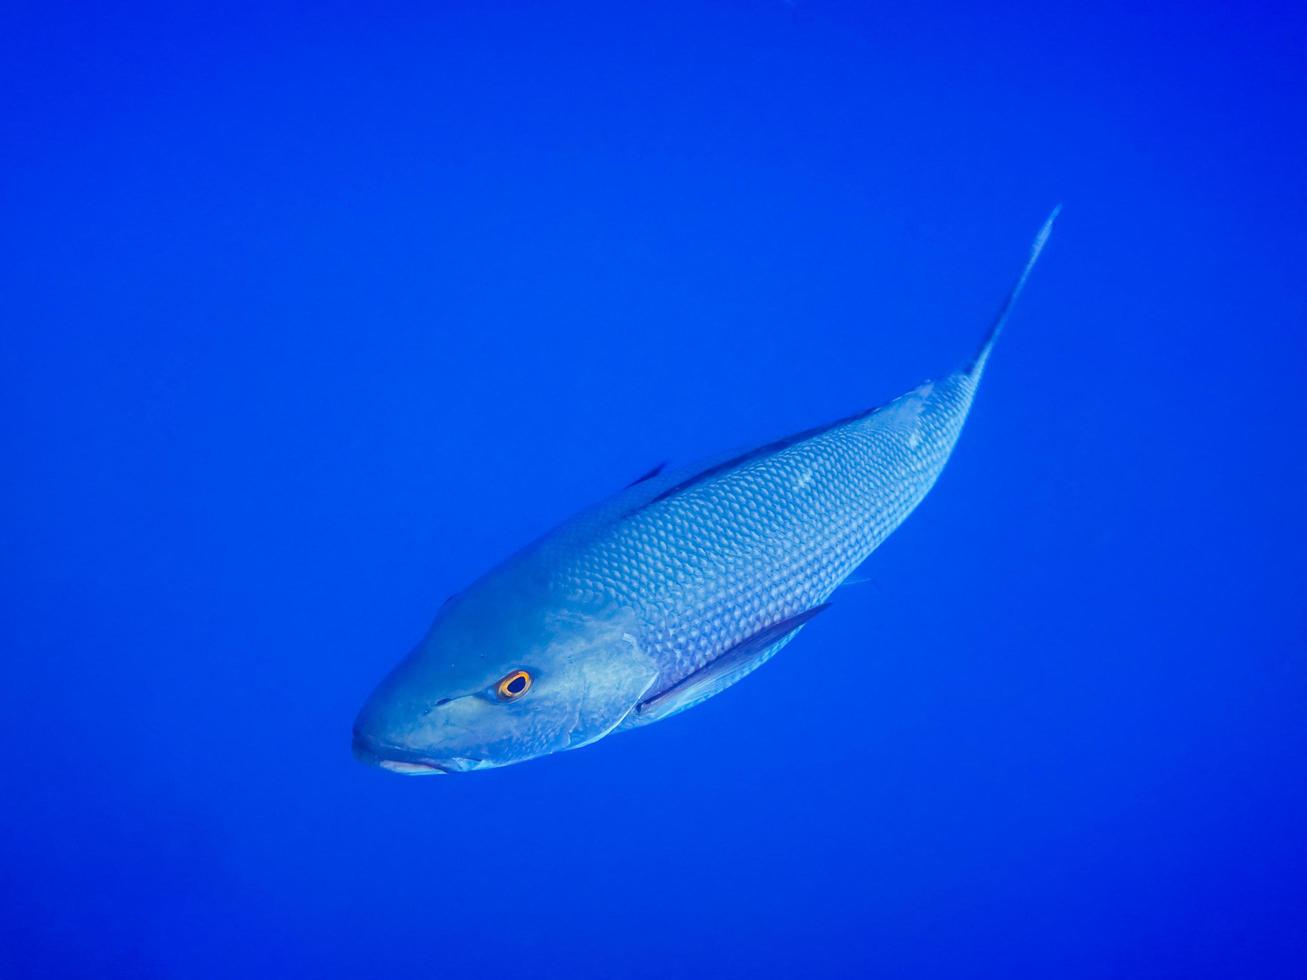 grandes peces plateados con ojos naranjas nadan muy cerca en aguas azules profundas durante el buceo foto